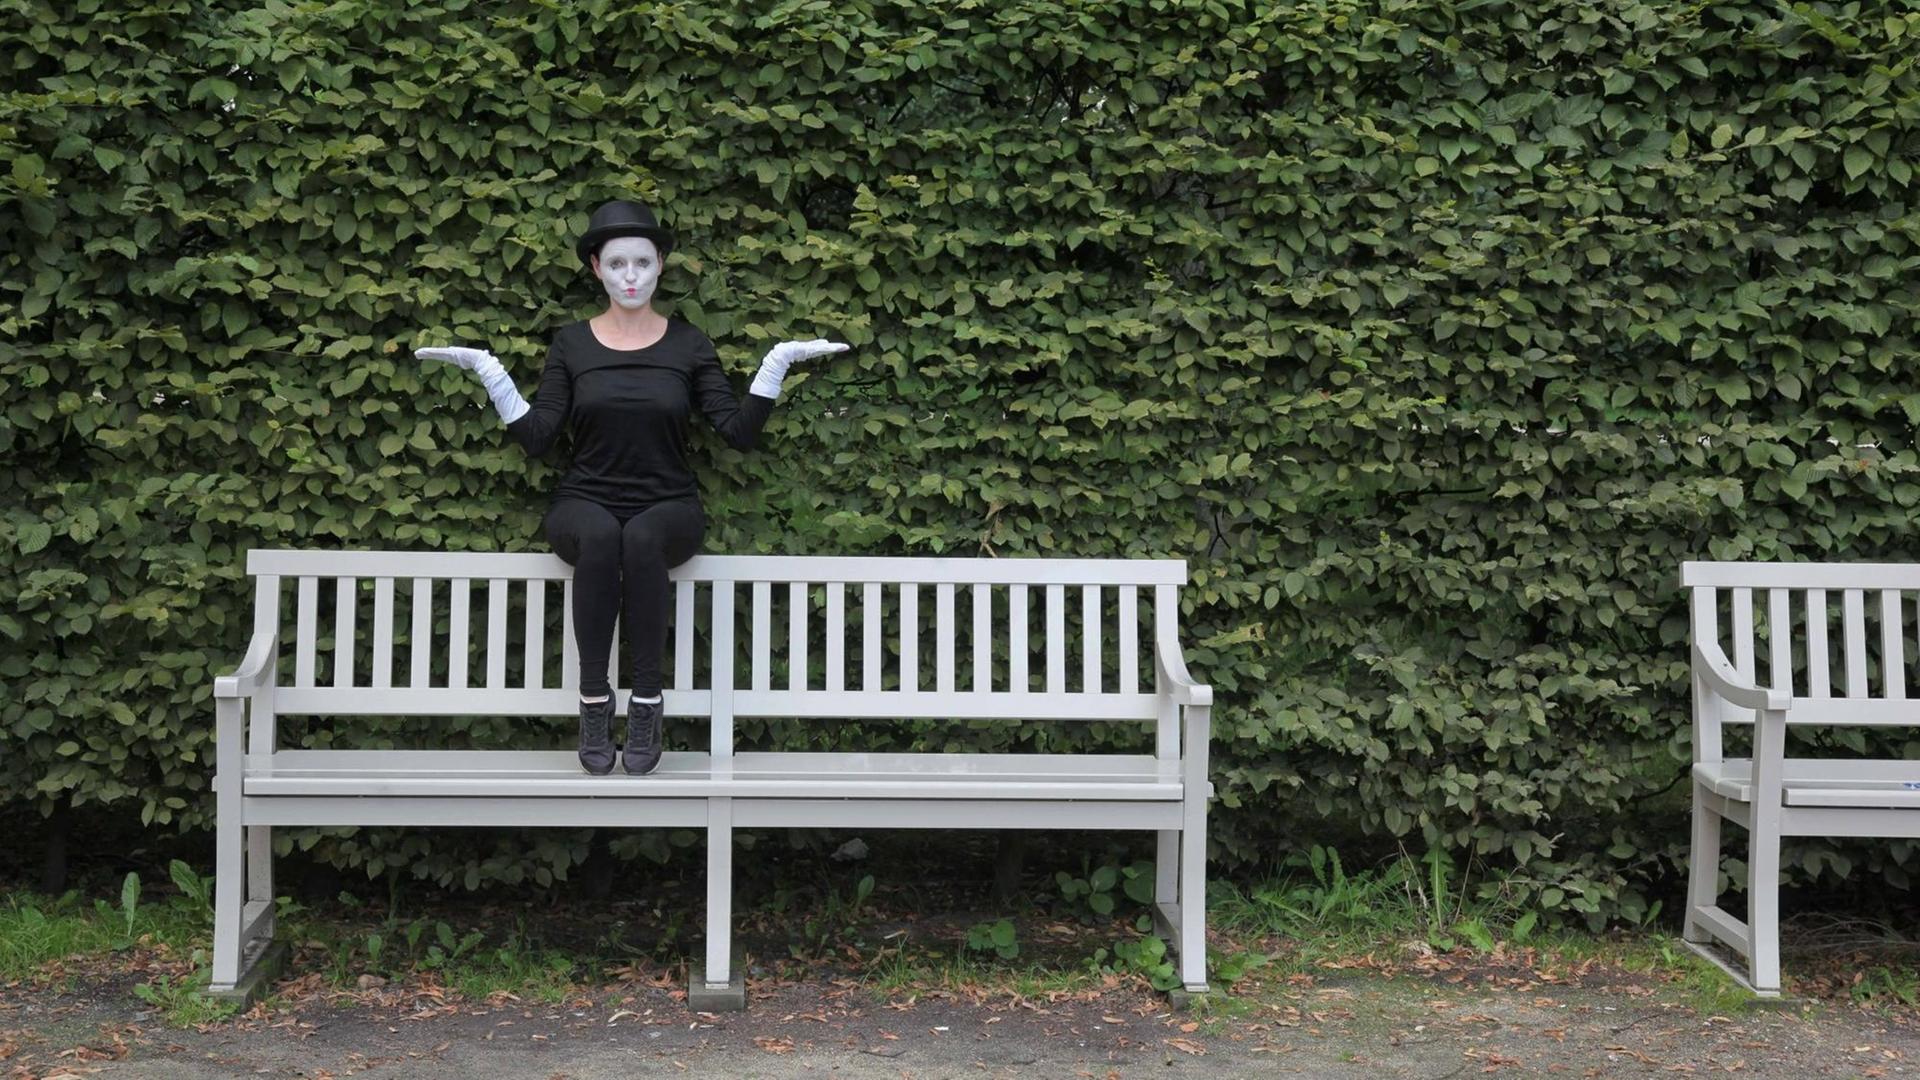 Eine Frau sitzt in Verkleidung einer Pantomime auf der Rückenlehne auf der Parkbank und macht ein witzige Geste. Im Hintergrund ist ein grüner Busch.